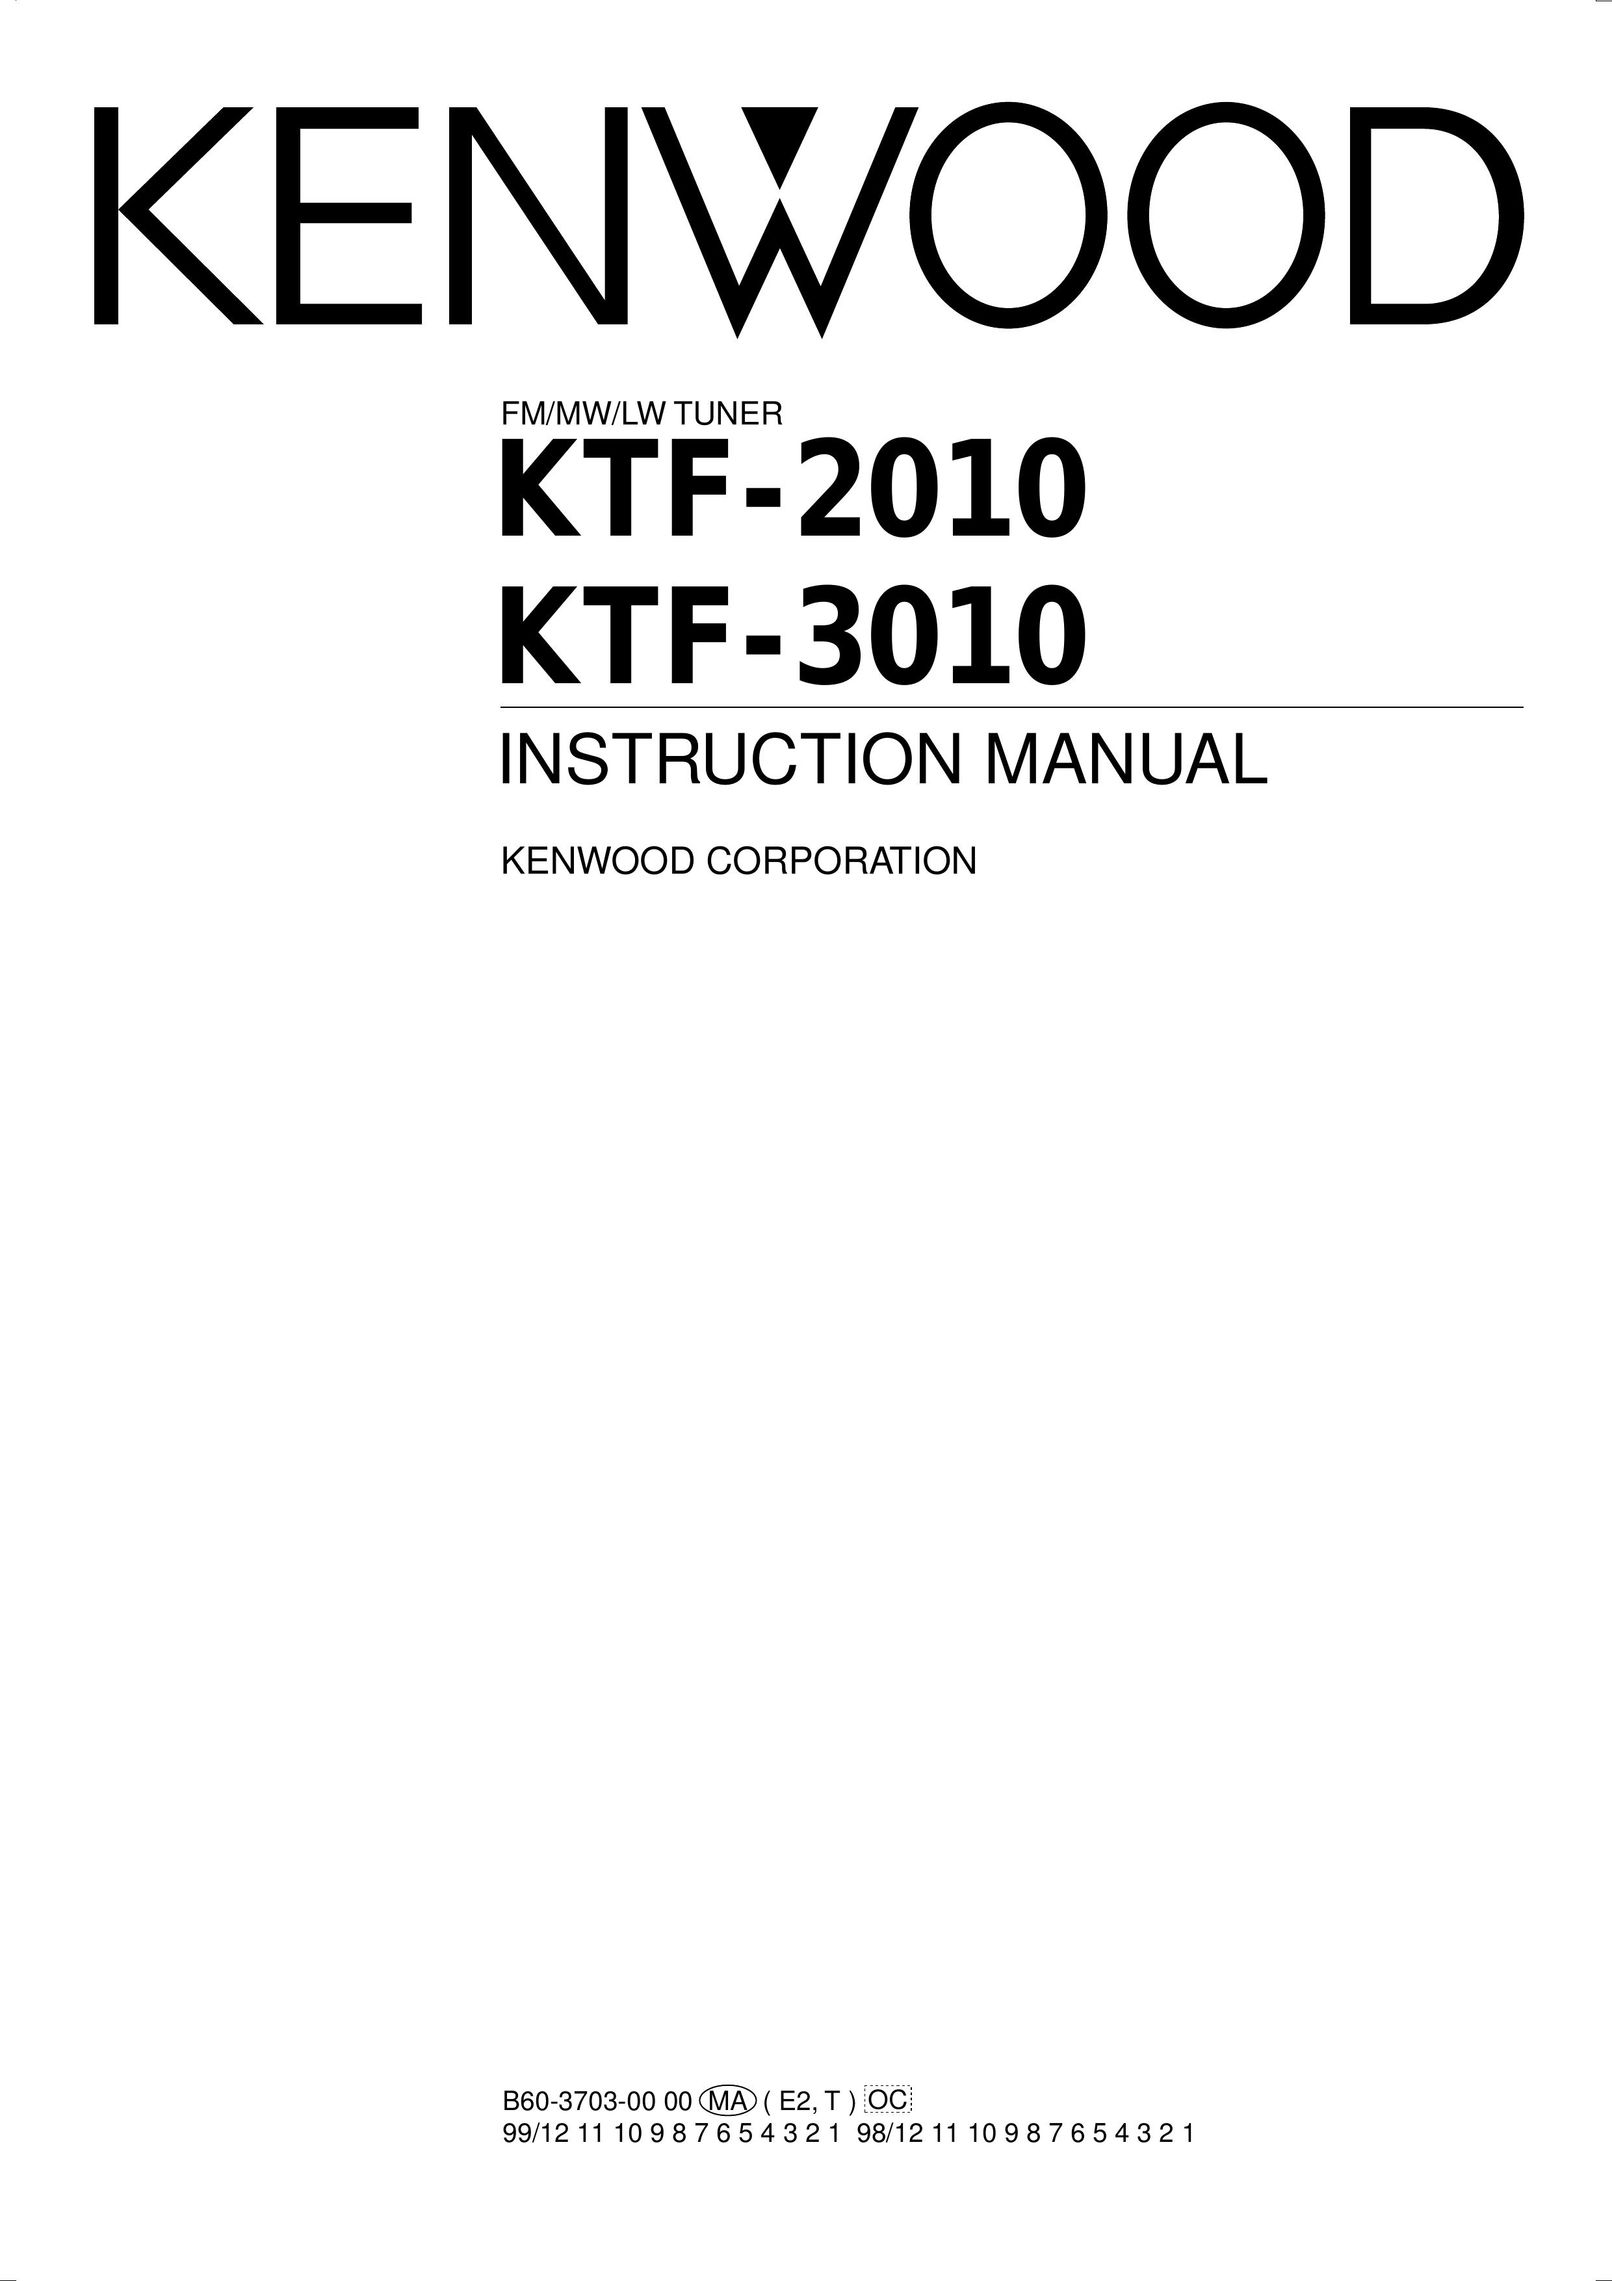 Kenwood KTF-3010 Radio User Manual